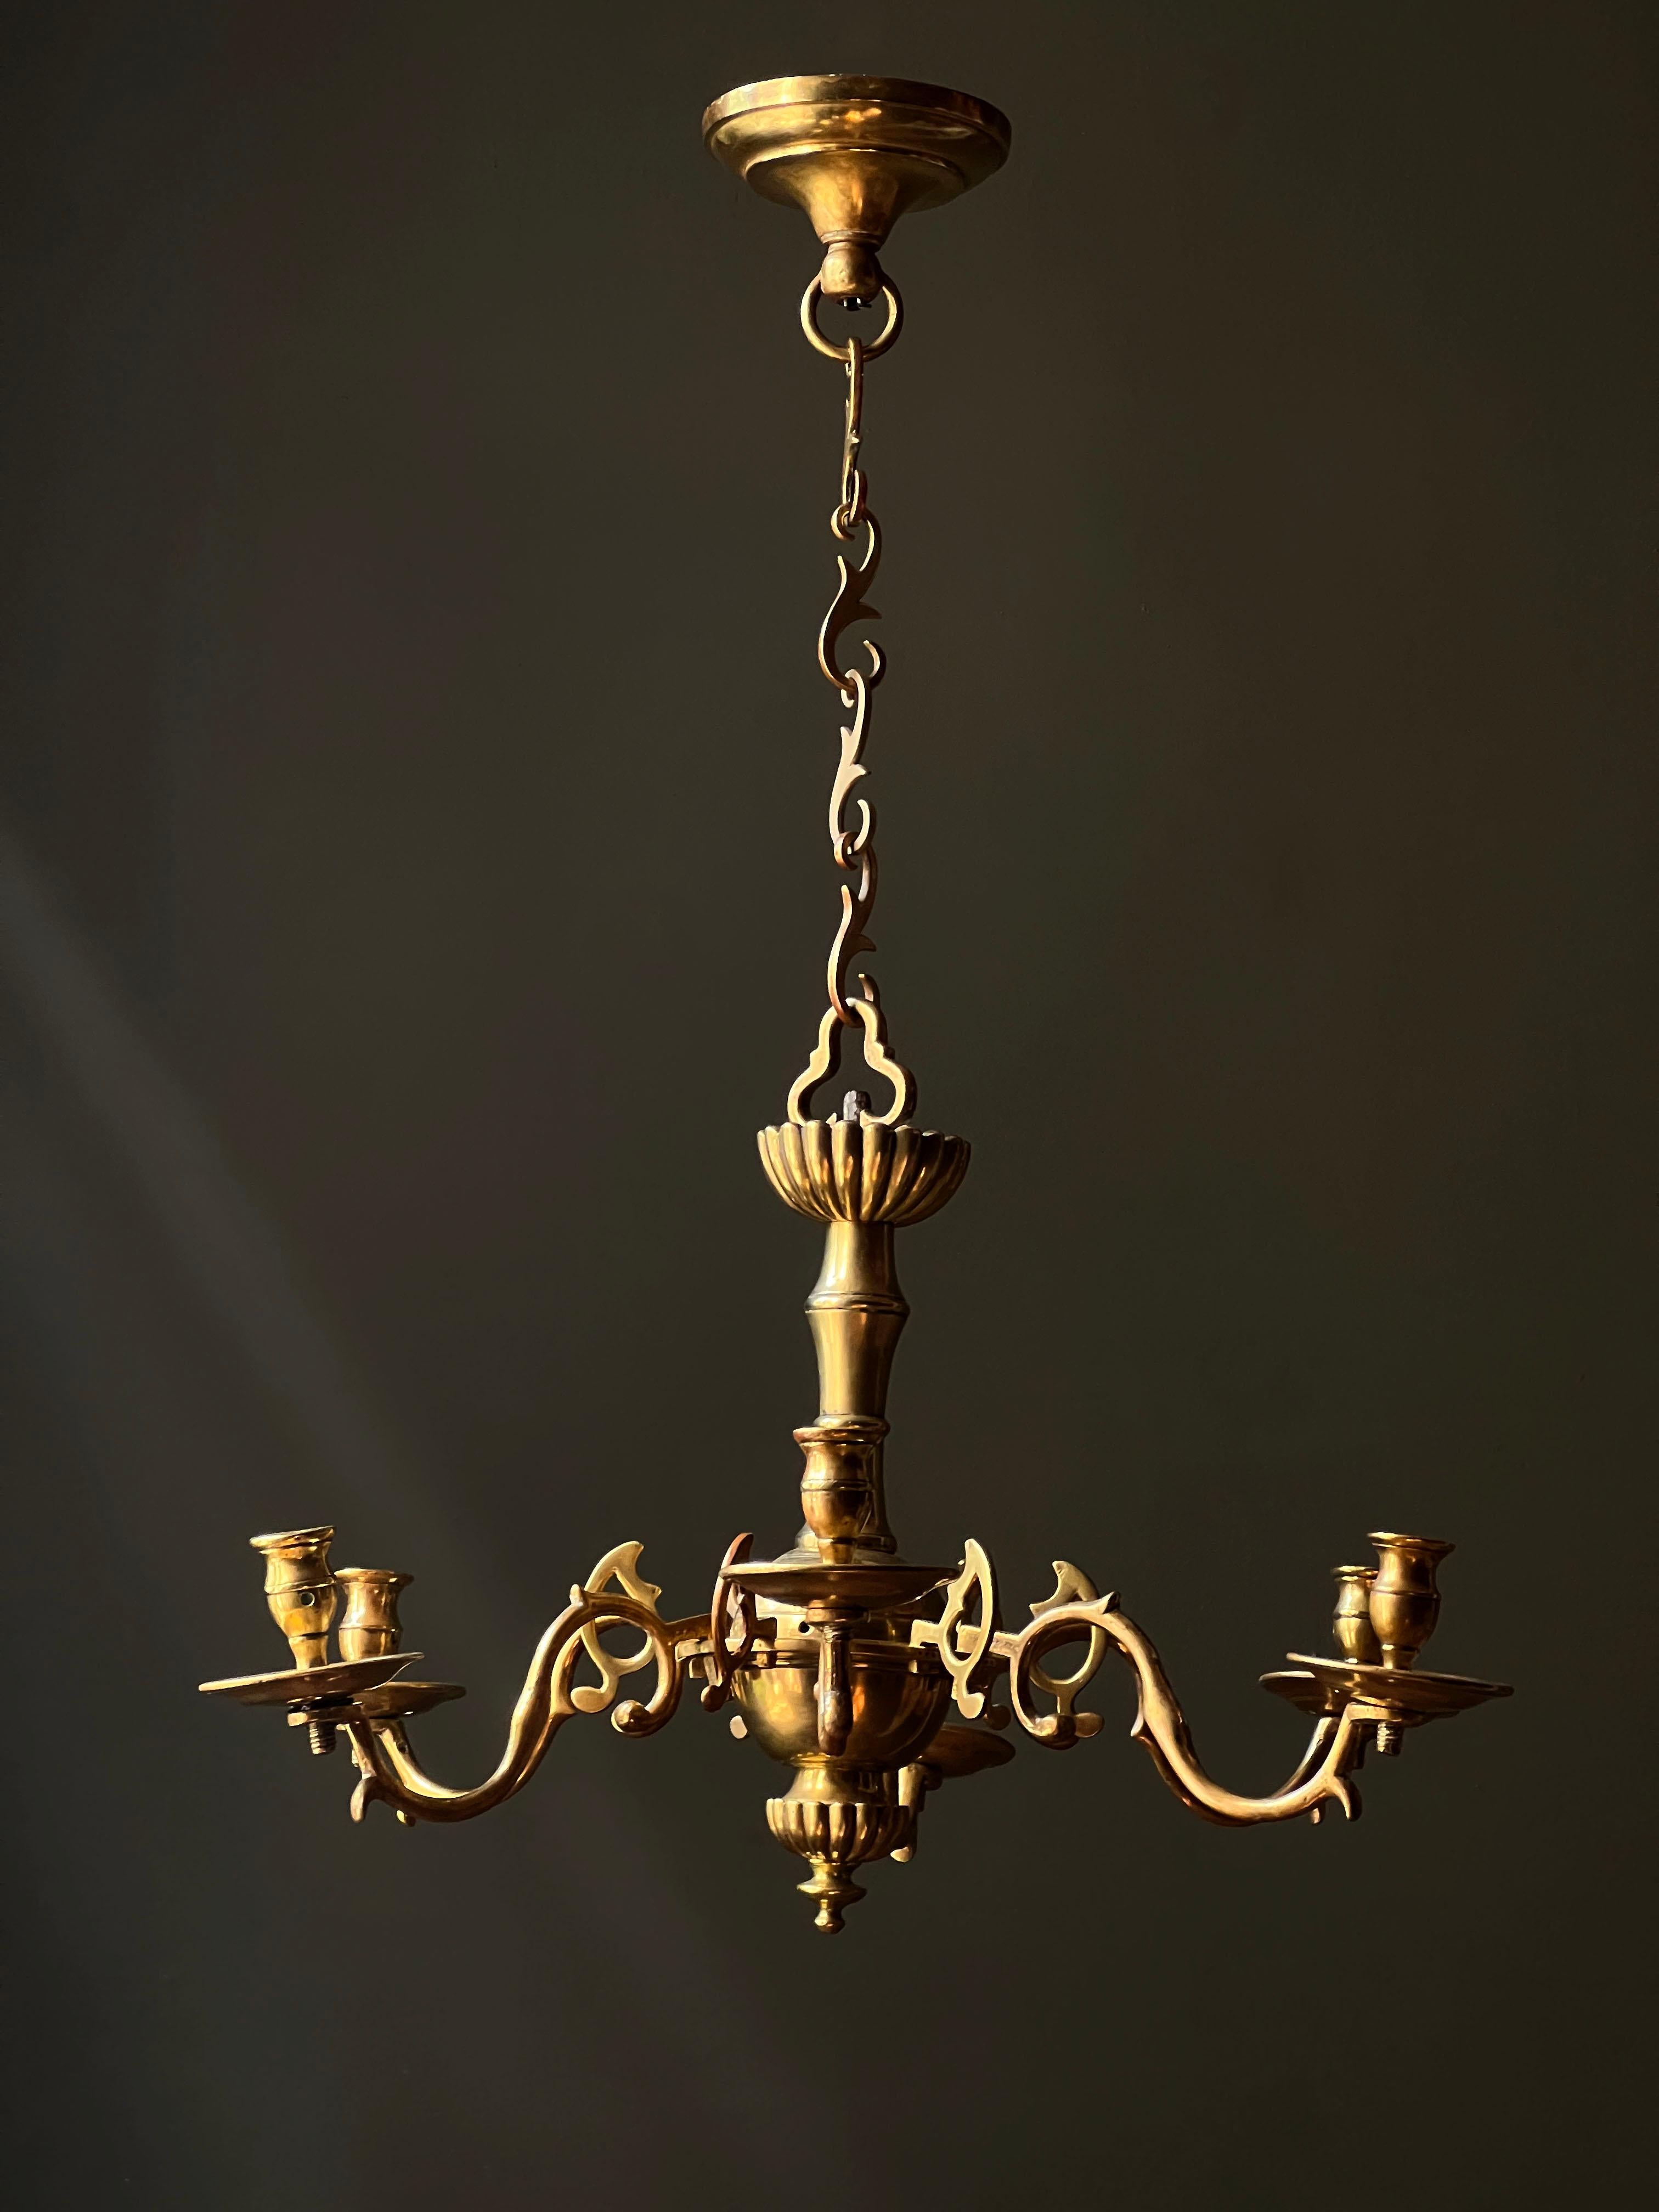 Un extraordinaire lustre en laiton d'époque du 18e siècle, d'une forme rare.  De délicats liens de feuilles suspendus à la monture de plafond d'origine soutiennent un crochet tréflé et le corps de la lumière à partir duquel s'étendent six bras de